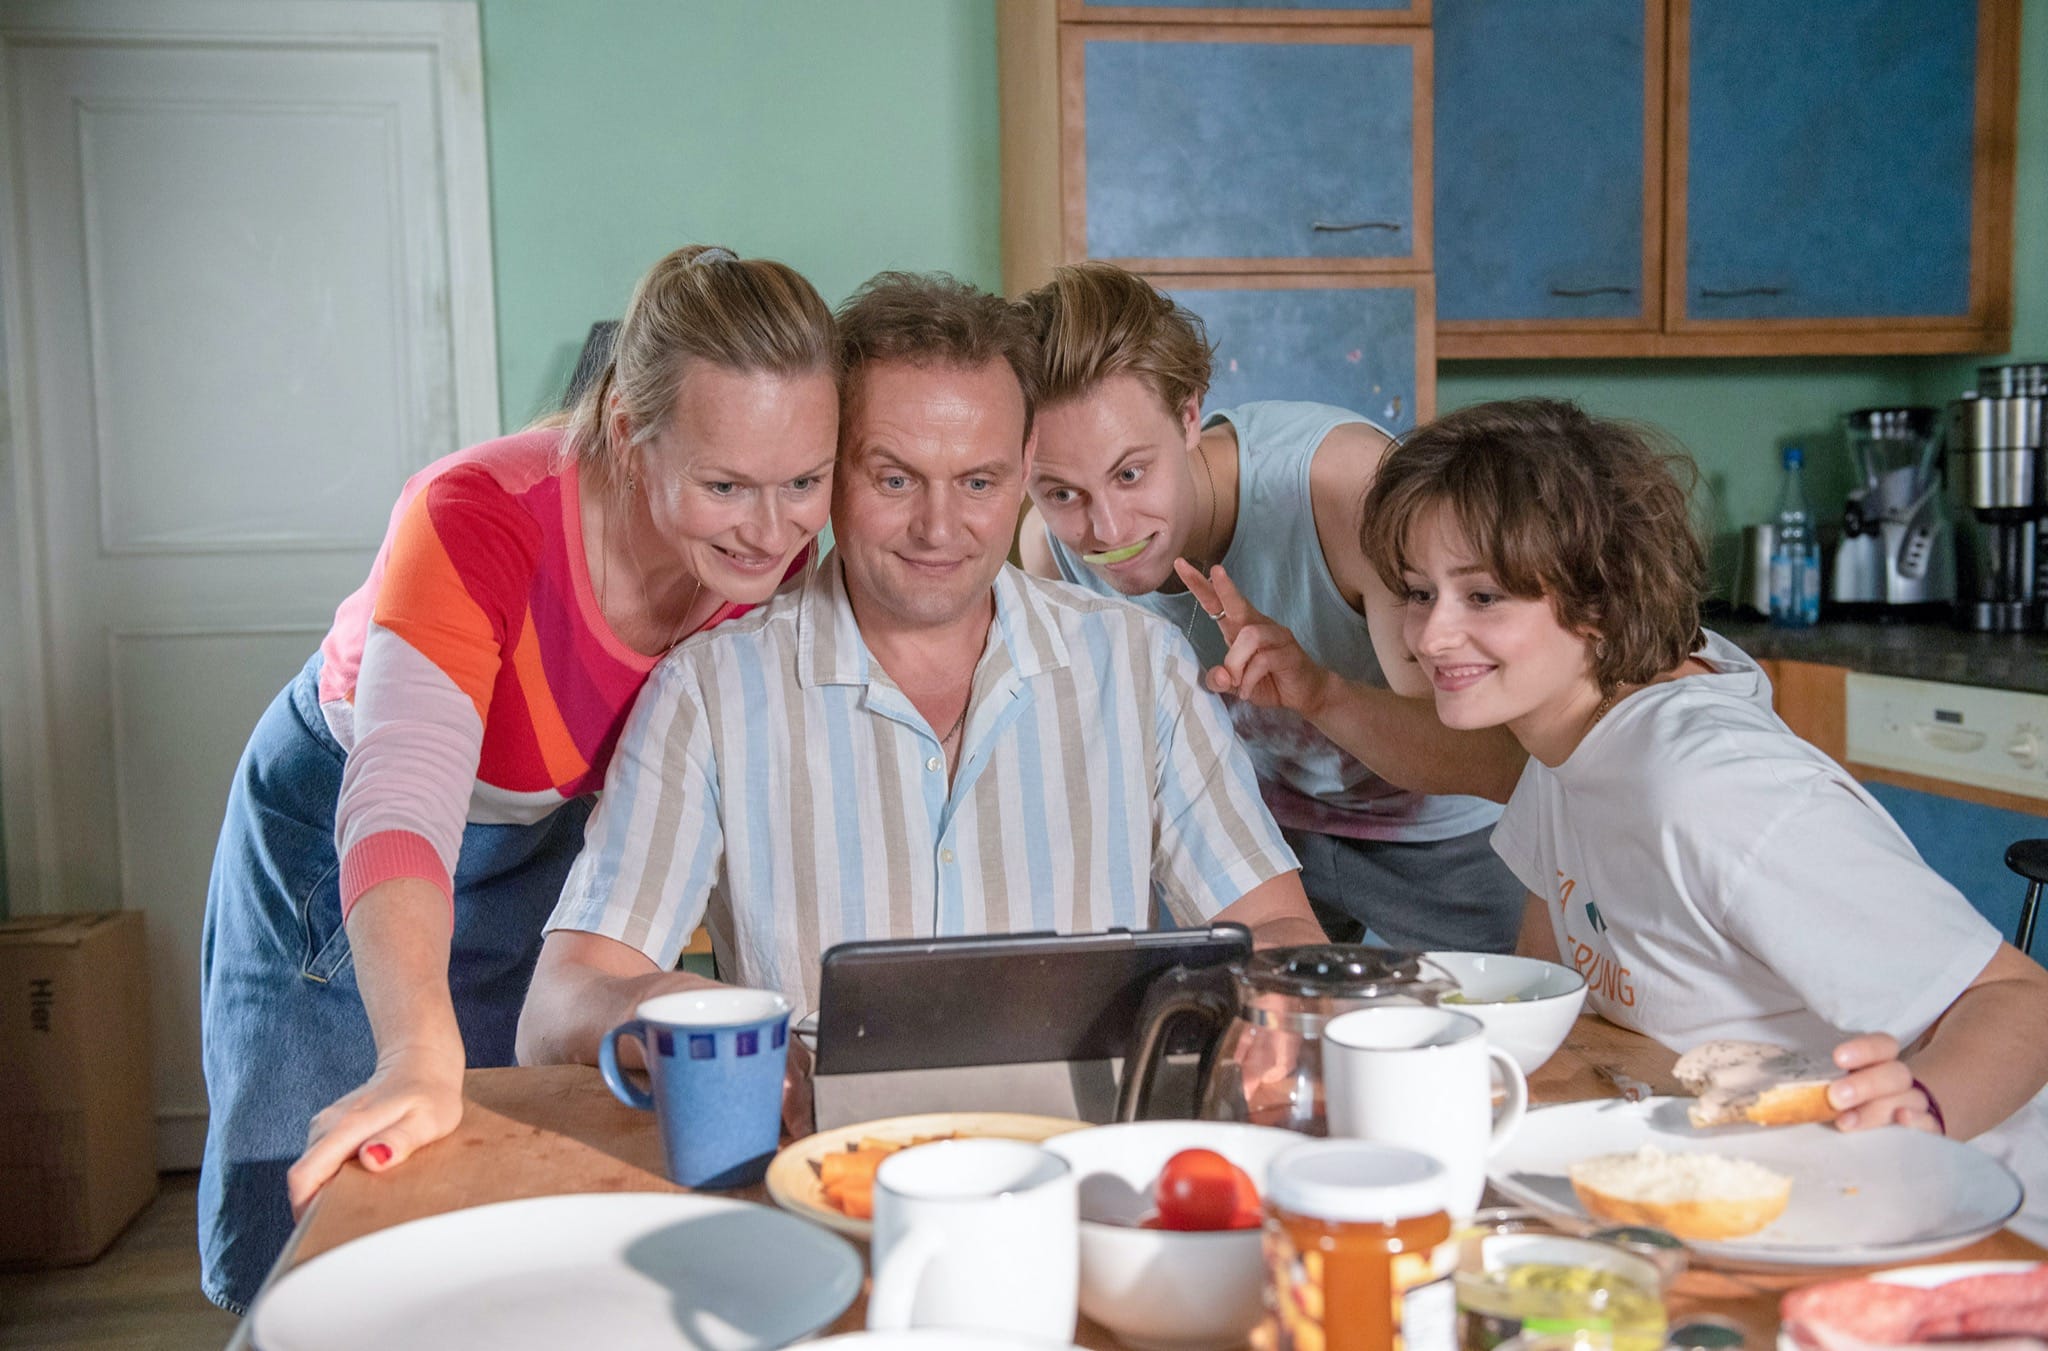 Parents à perpétuité (2021) de Florian Schwarz image téléfilm